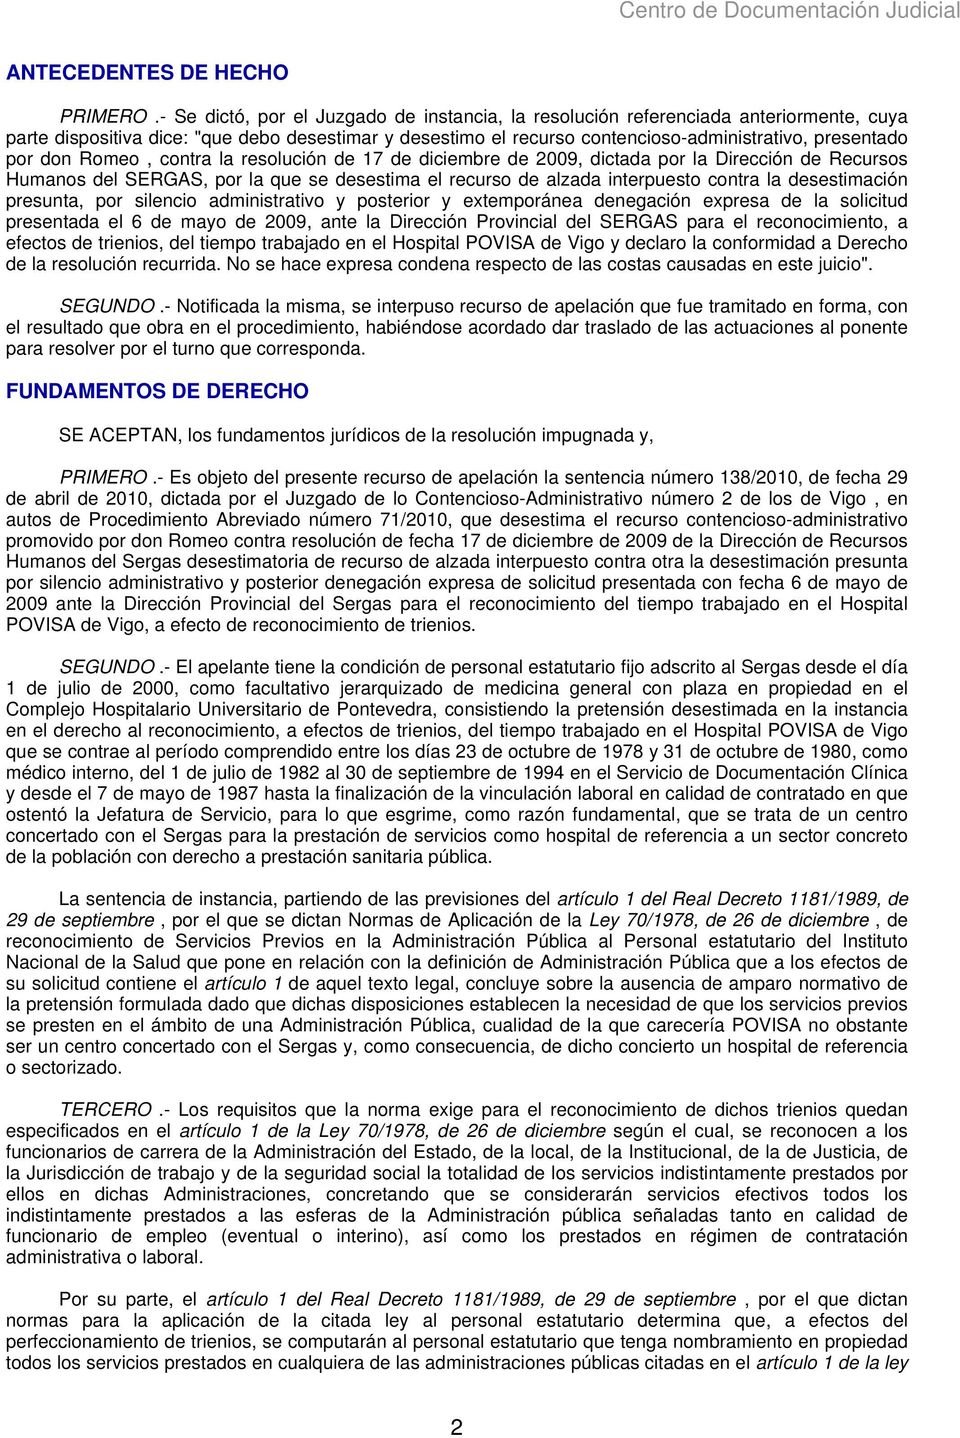 don Romeo, contra la resolución de 17 de diciembre de 2009, dictada por la Dirección de Recursos Humanos del SERGAS, por la que se desestima el recurso de alzada interpuesto contra la desestimación